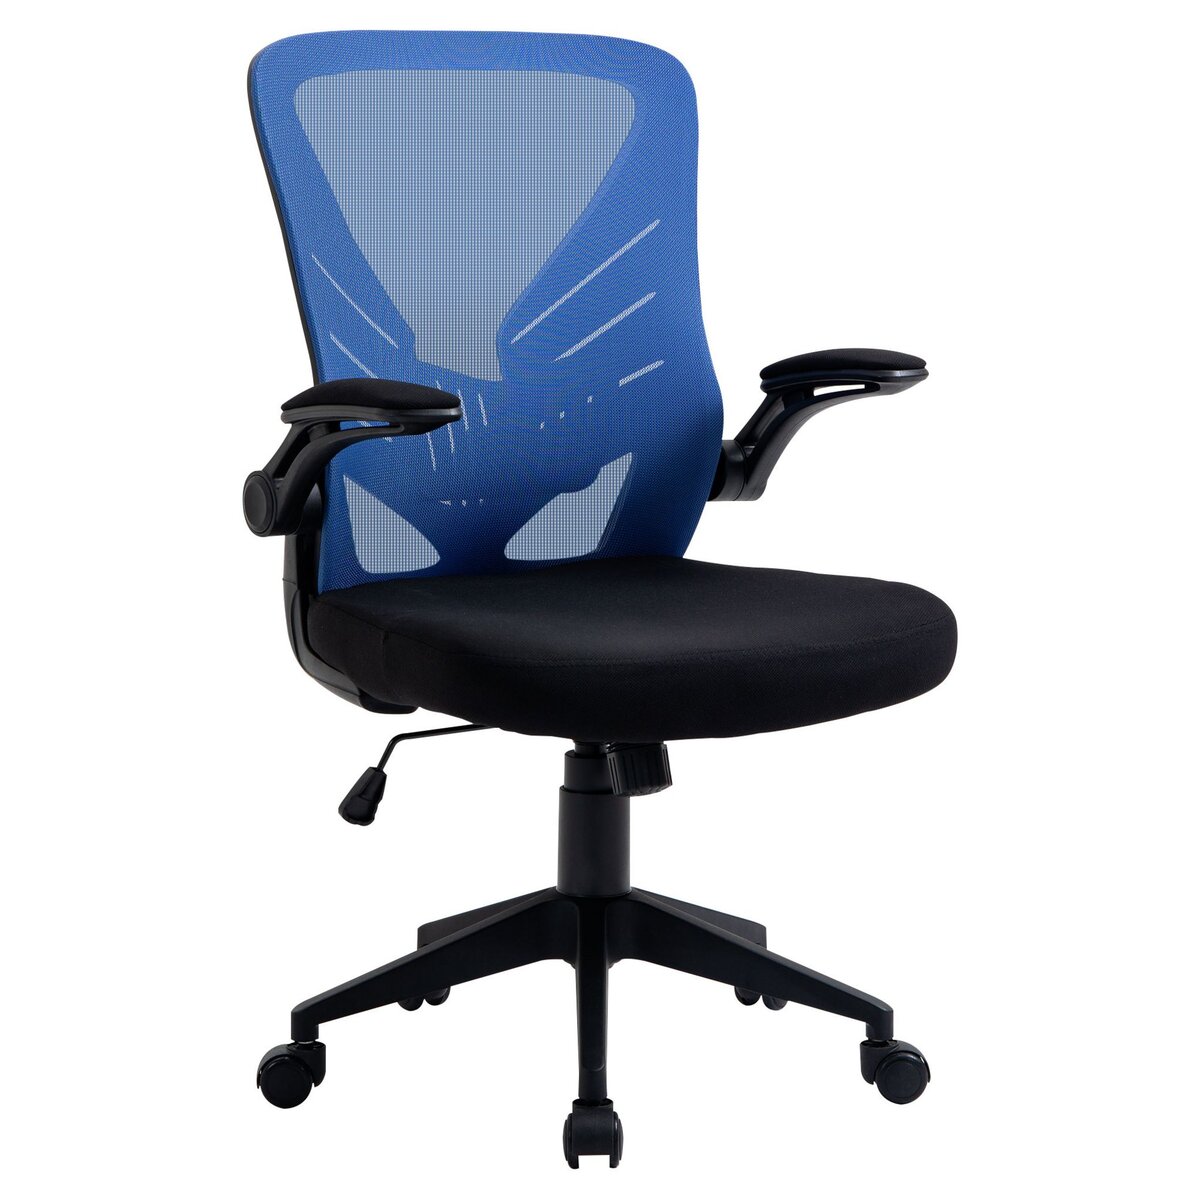 VINSETTO Vinsetto Chaise de bureau ergonomique support lombaires hauteur réglable pivotante 360° accoudoirs relevables polyester maille bleu noir